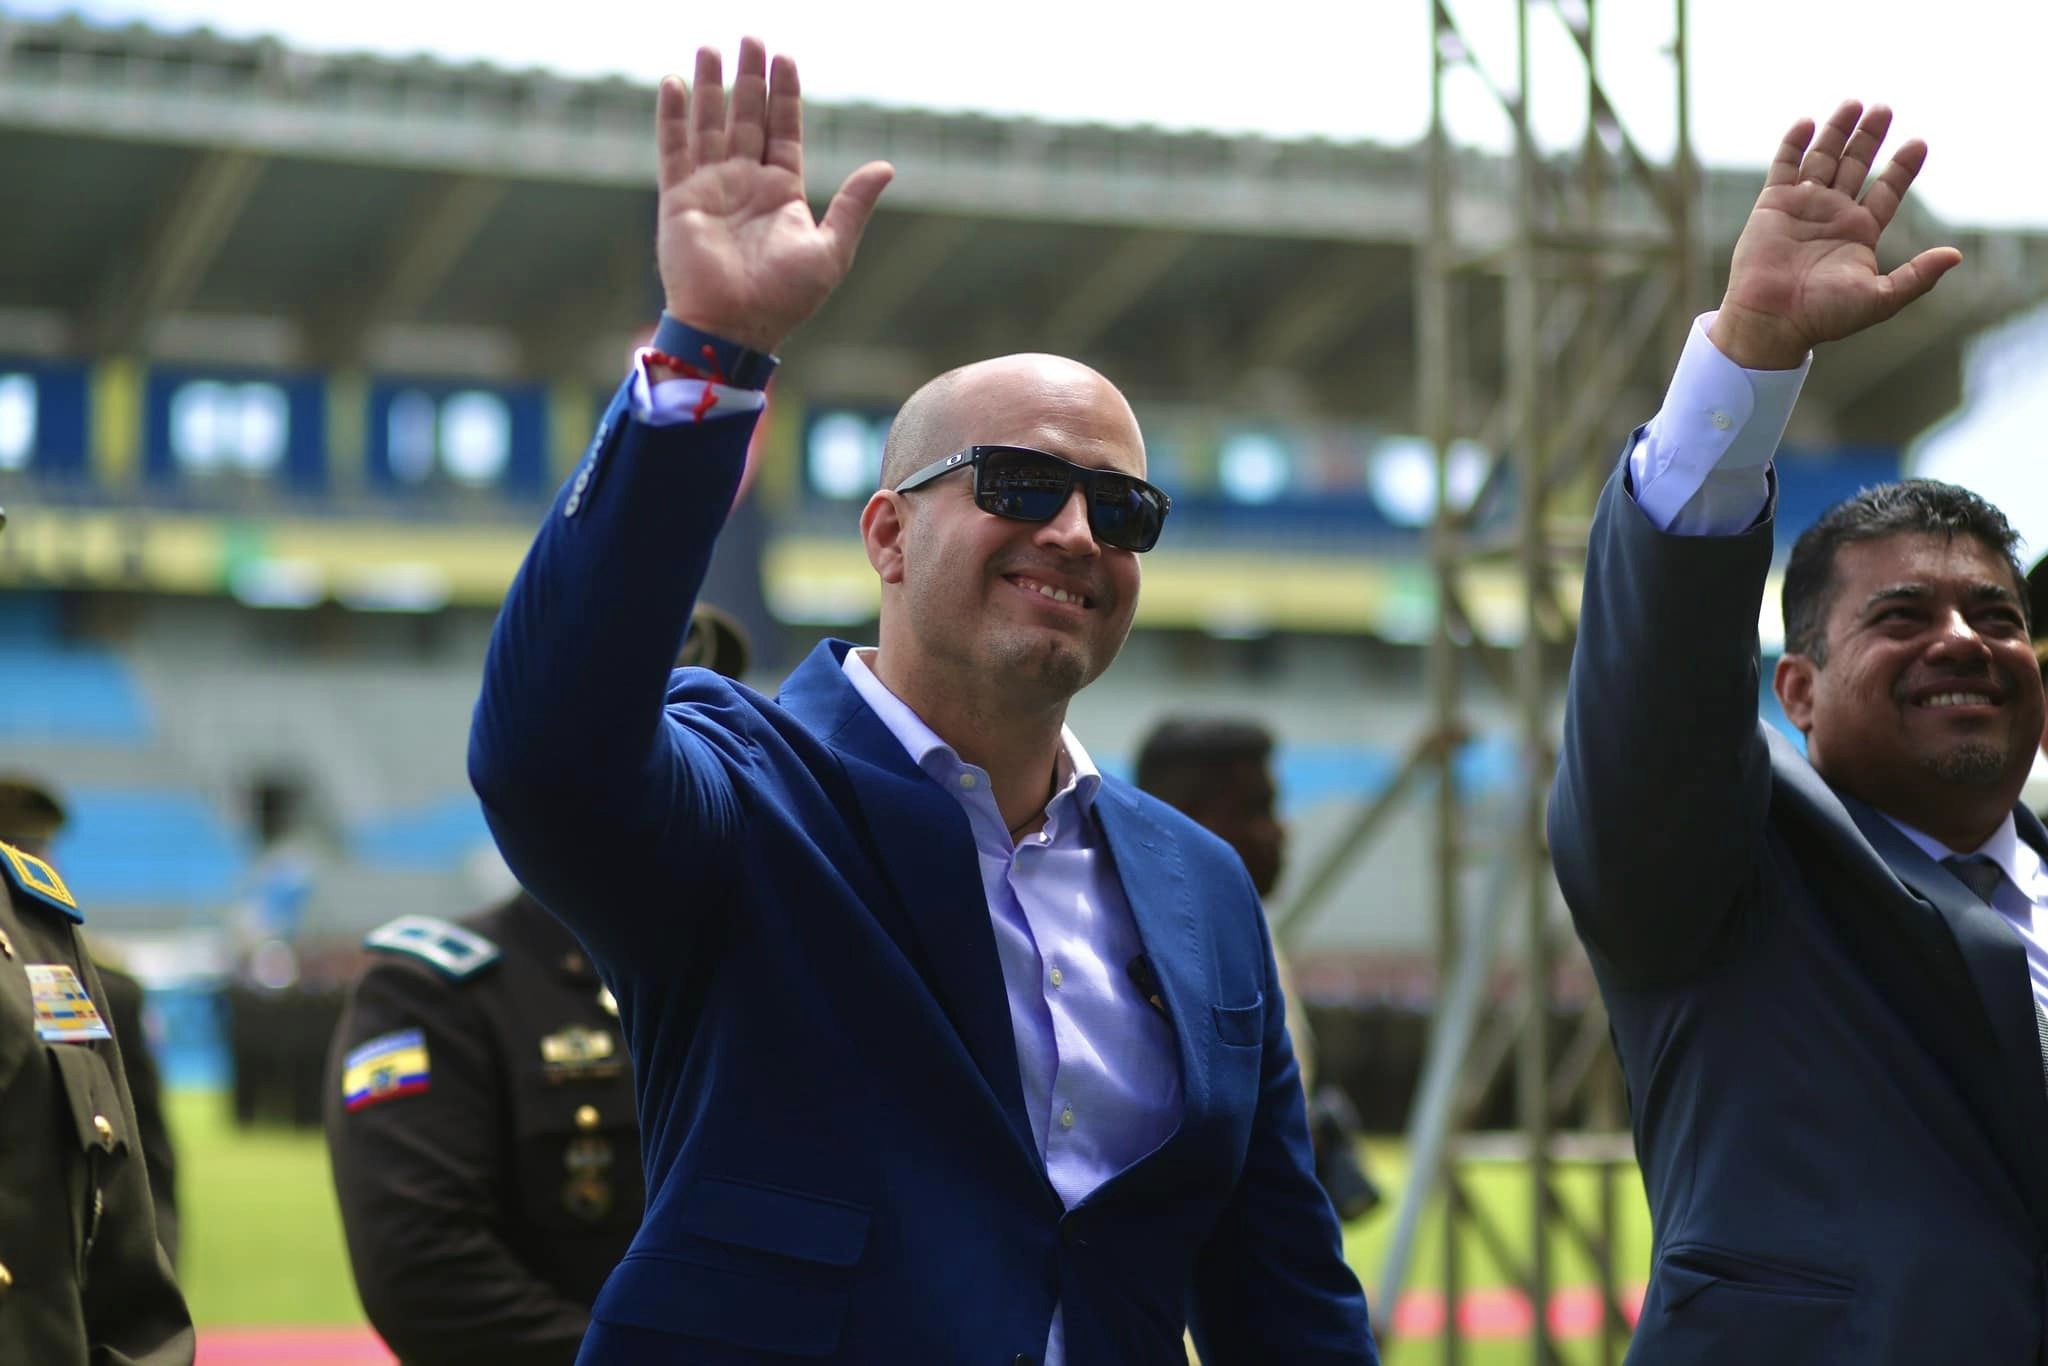 El alcalde de Manta, Agustín Intriago, quería ser presidente de Ecuador ...